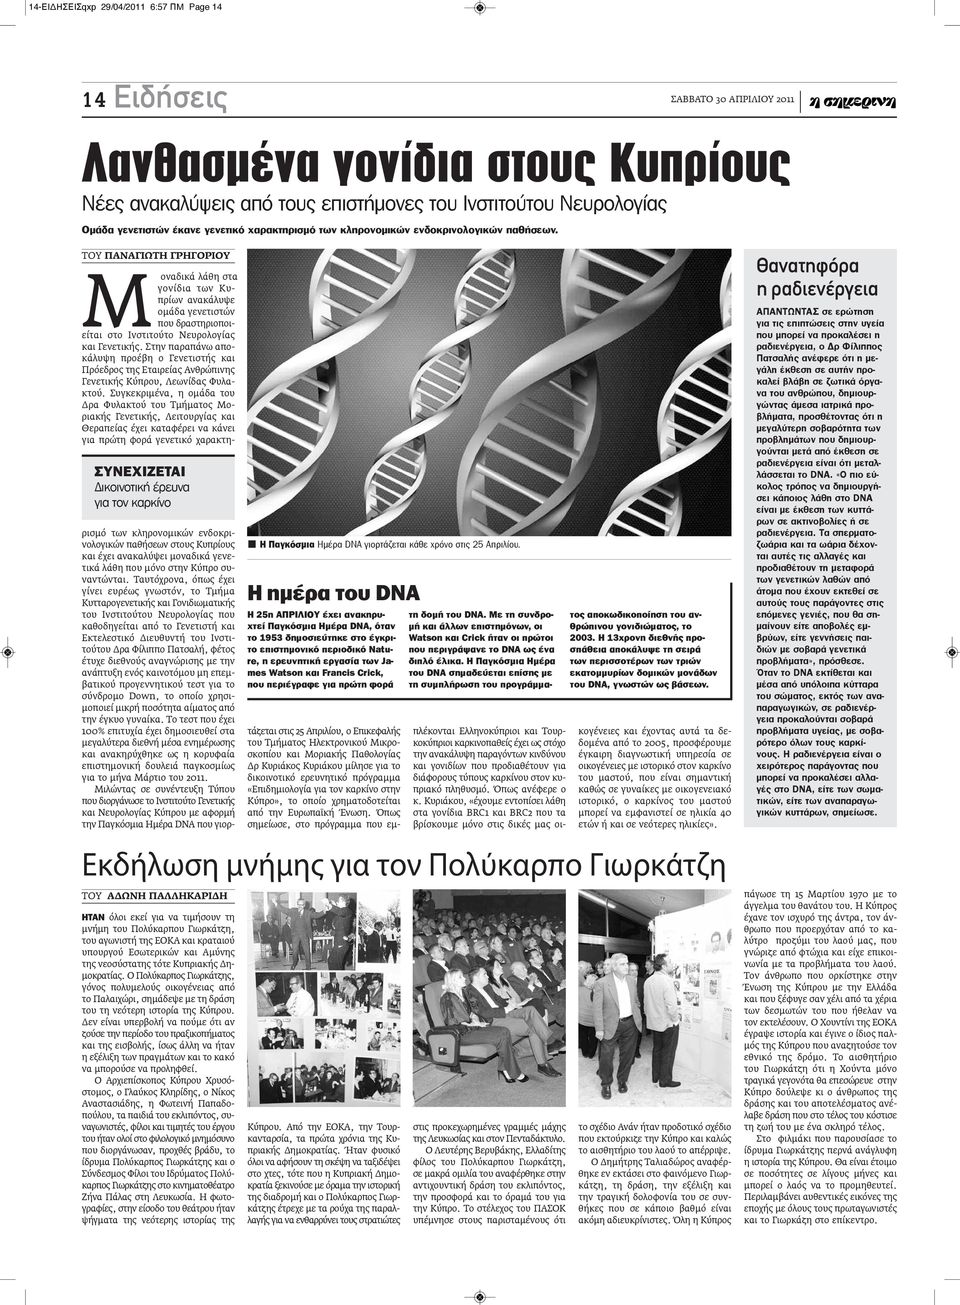 ΤΟΥ ΠΑΝΑΓΙΩΤΗ ΓΡΗΓΟΡΙΟΥ ΣυνΕΧιΖΕτΑι Δικοινοτική έρευνα για τον καρκίνο Moναδικά λάθη στα γονίδια των Κυπρίων ανακάλυψε ομάδα γενετιστών που δραστηριοποιείται στο Ινστιτούτο Νευρολογίας και Γενετικής.